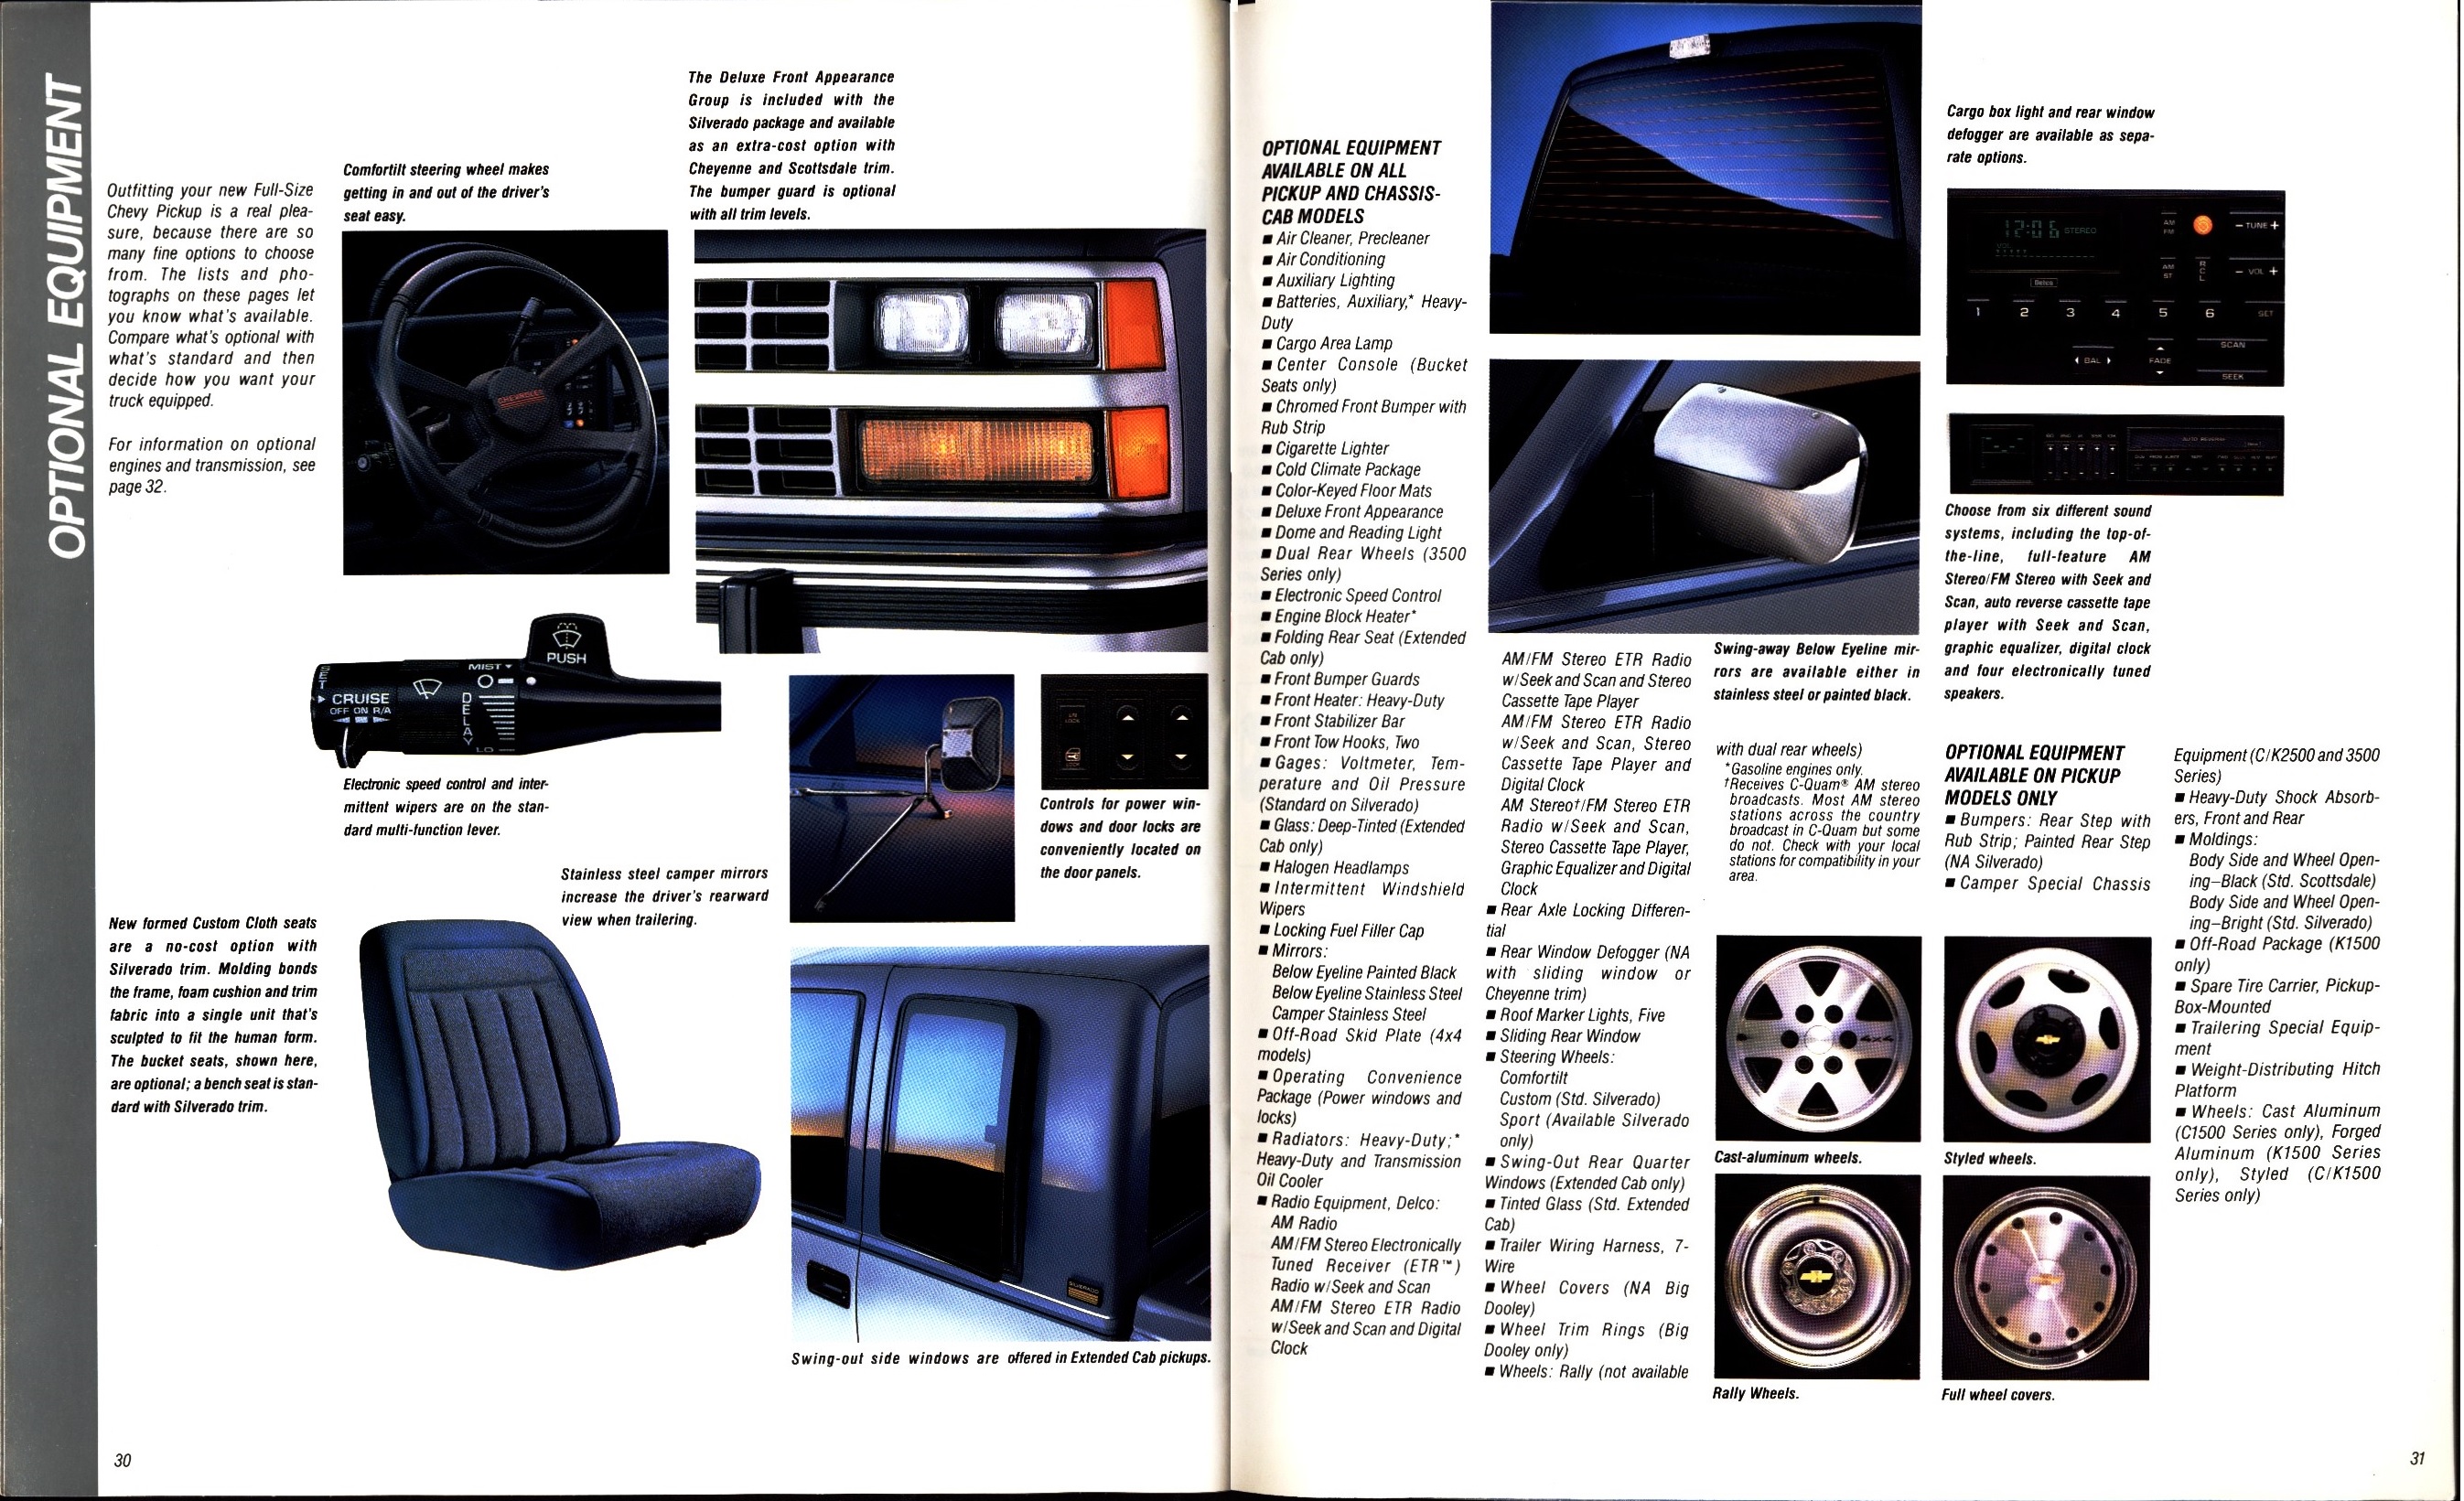 1988 Chevrolet Full Size Pickup Brochure (Rev) 30-31